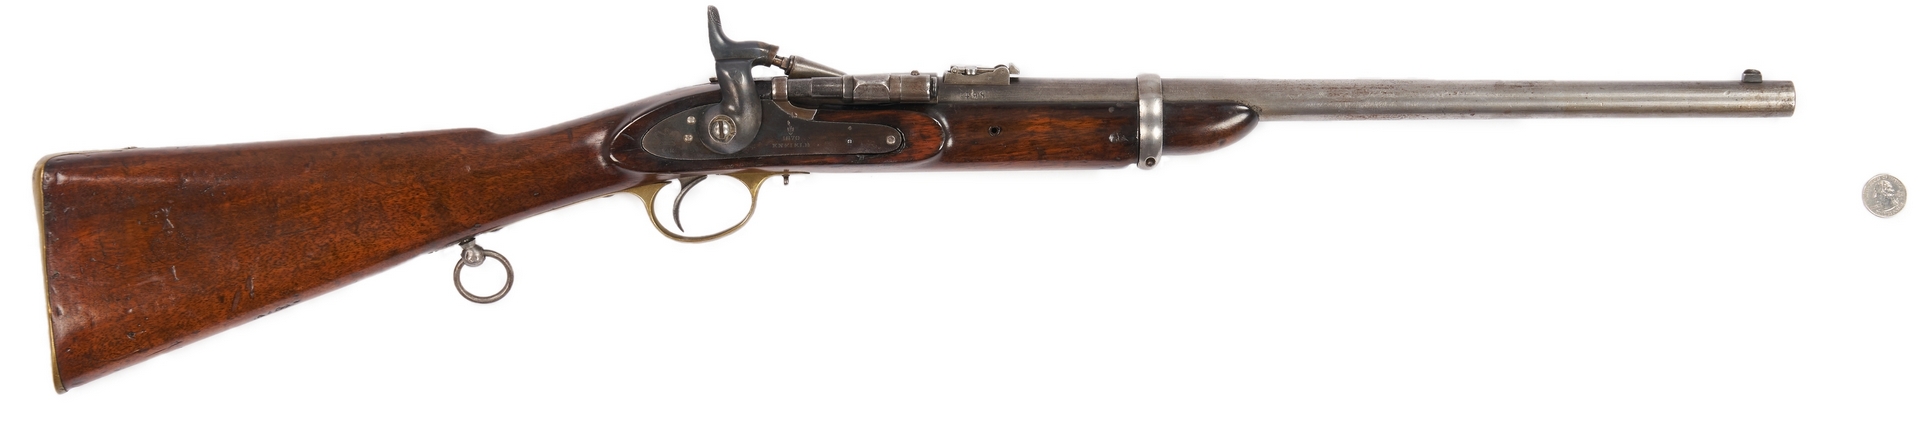 Lot 699: British Enfield-Snider Model 1870 Carbine, .577 Caliber